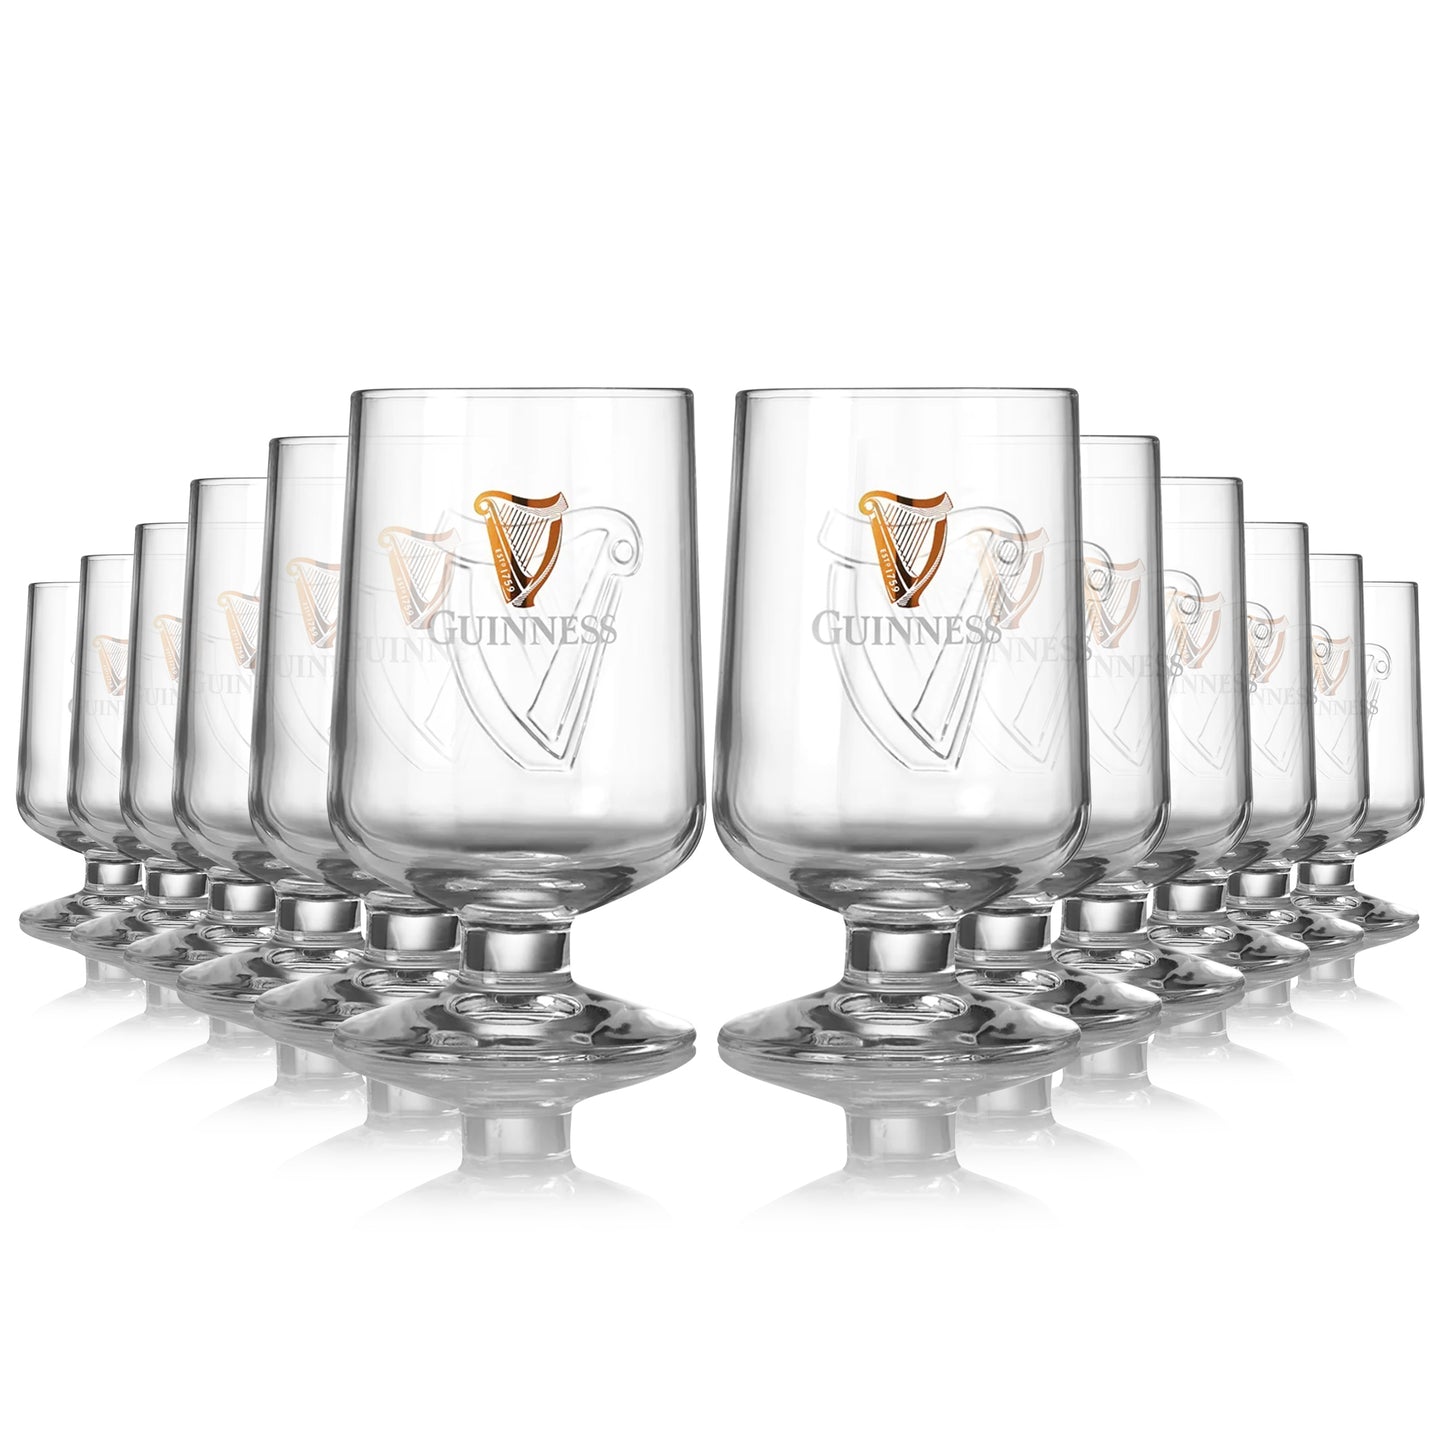 A set of Guinness Embossed Stem Glass 420ml - 12 Pack glasses from Guinness UK.